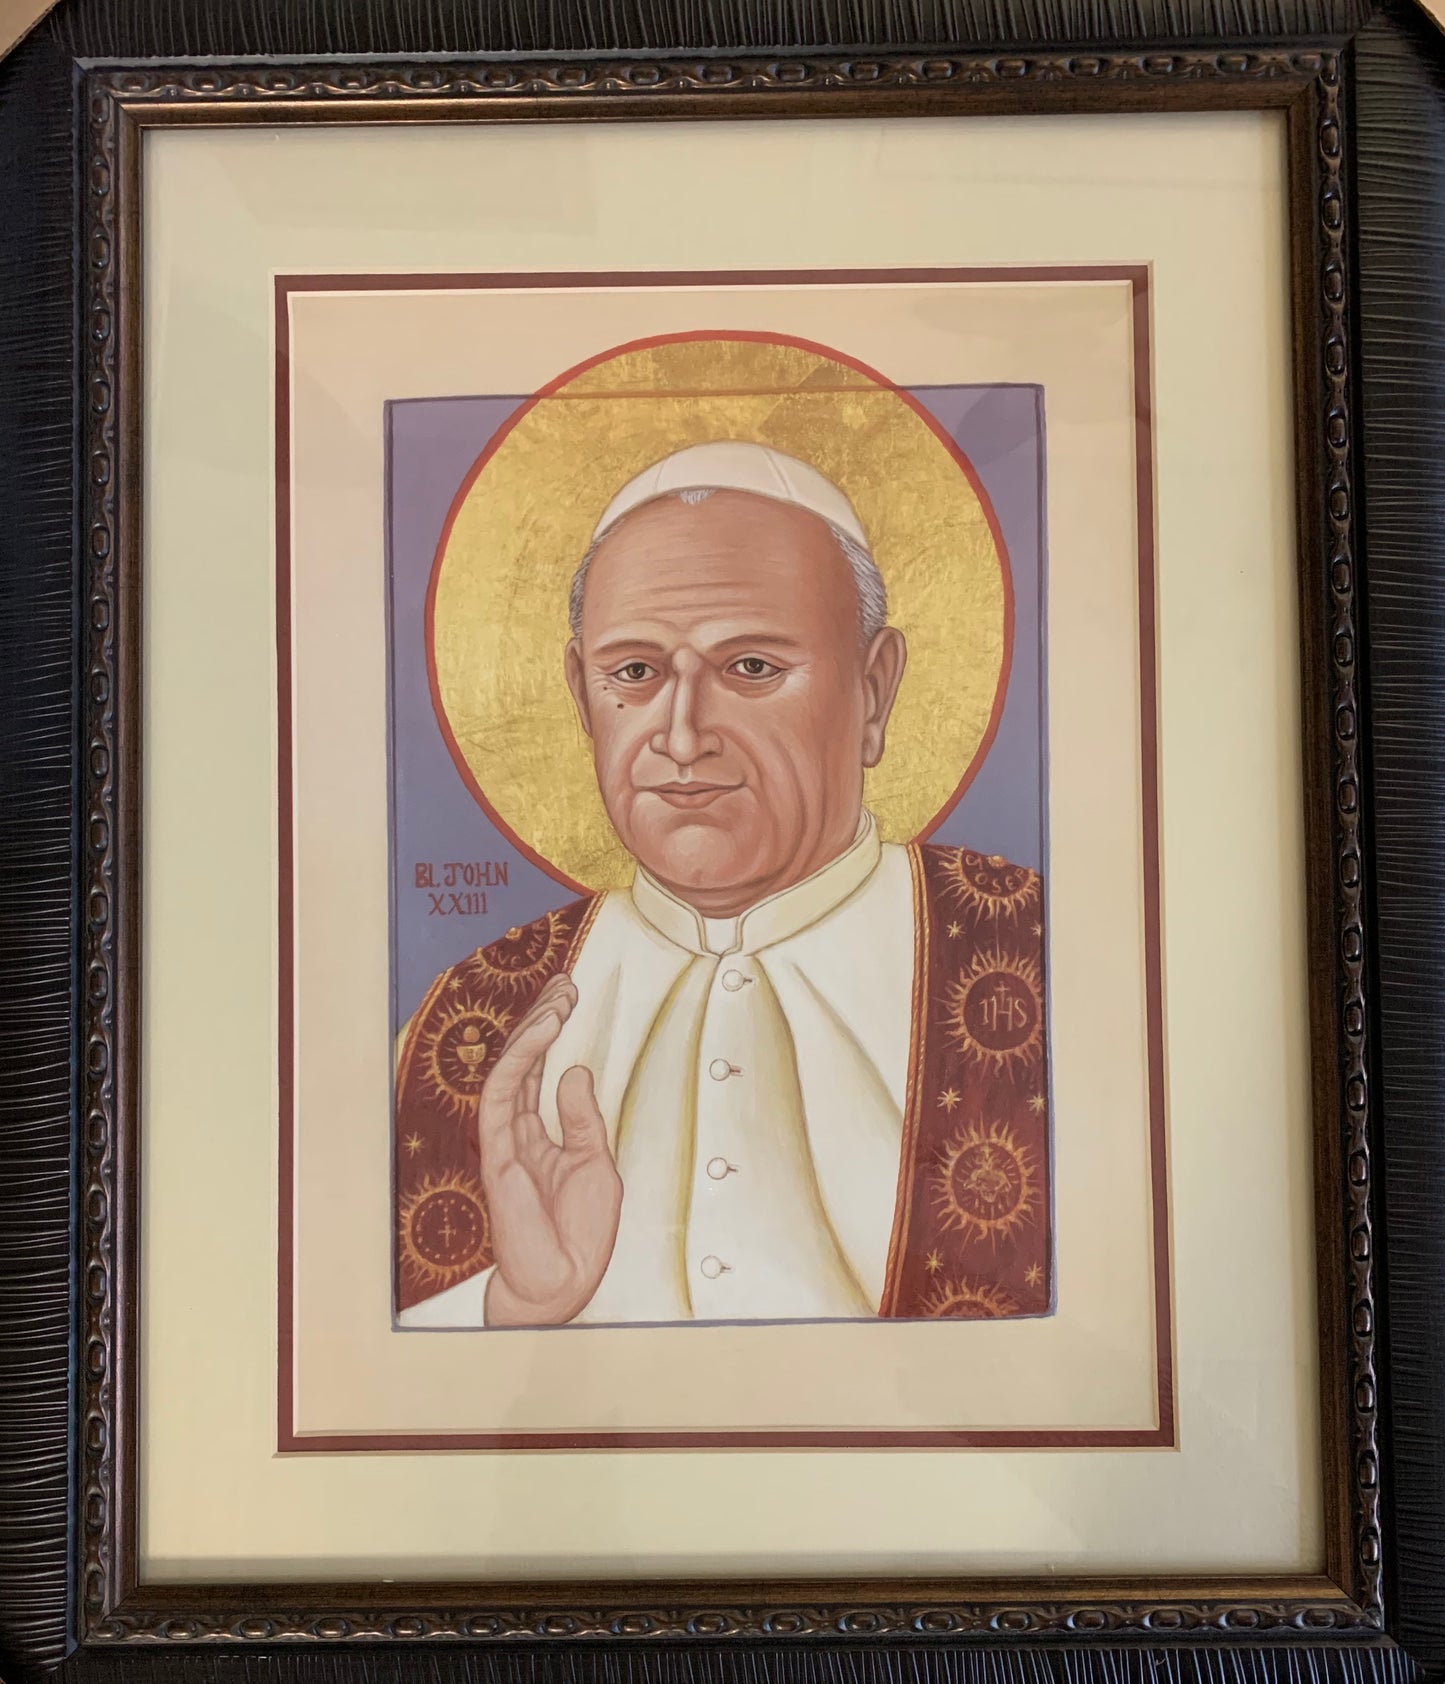 Pope John XXIII Framed Print